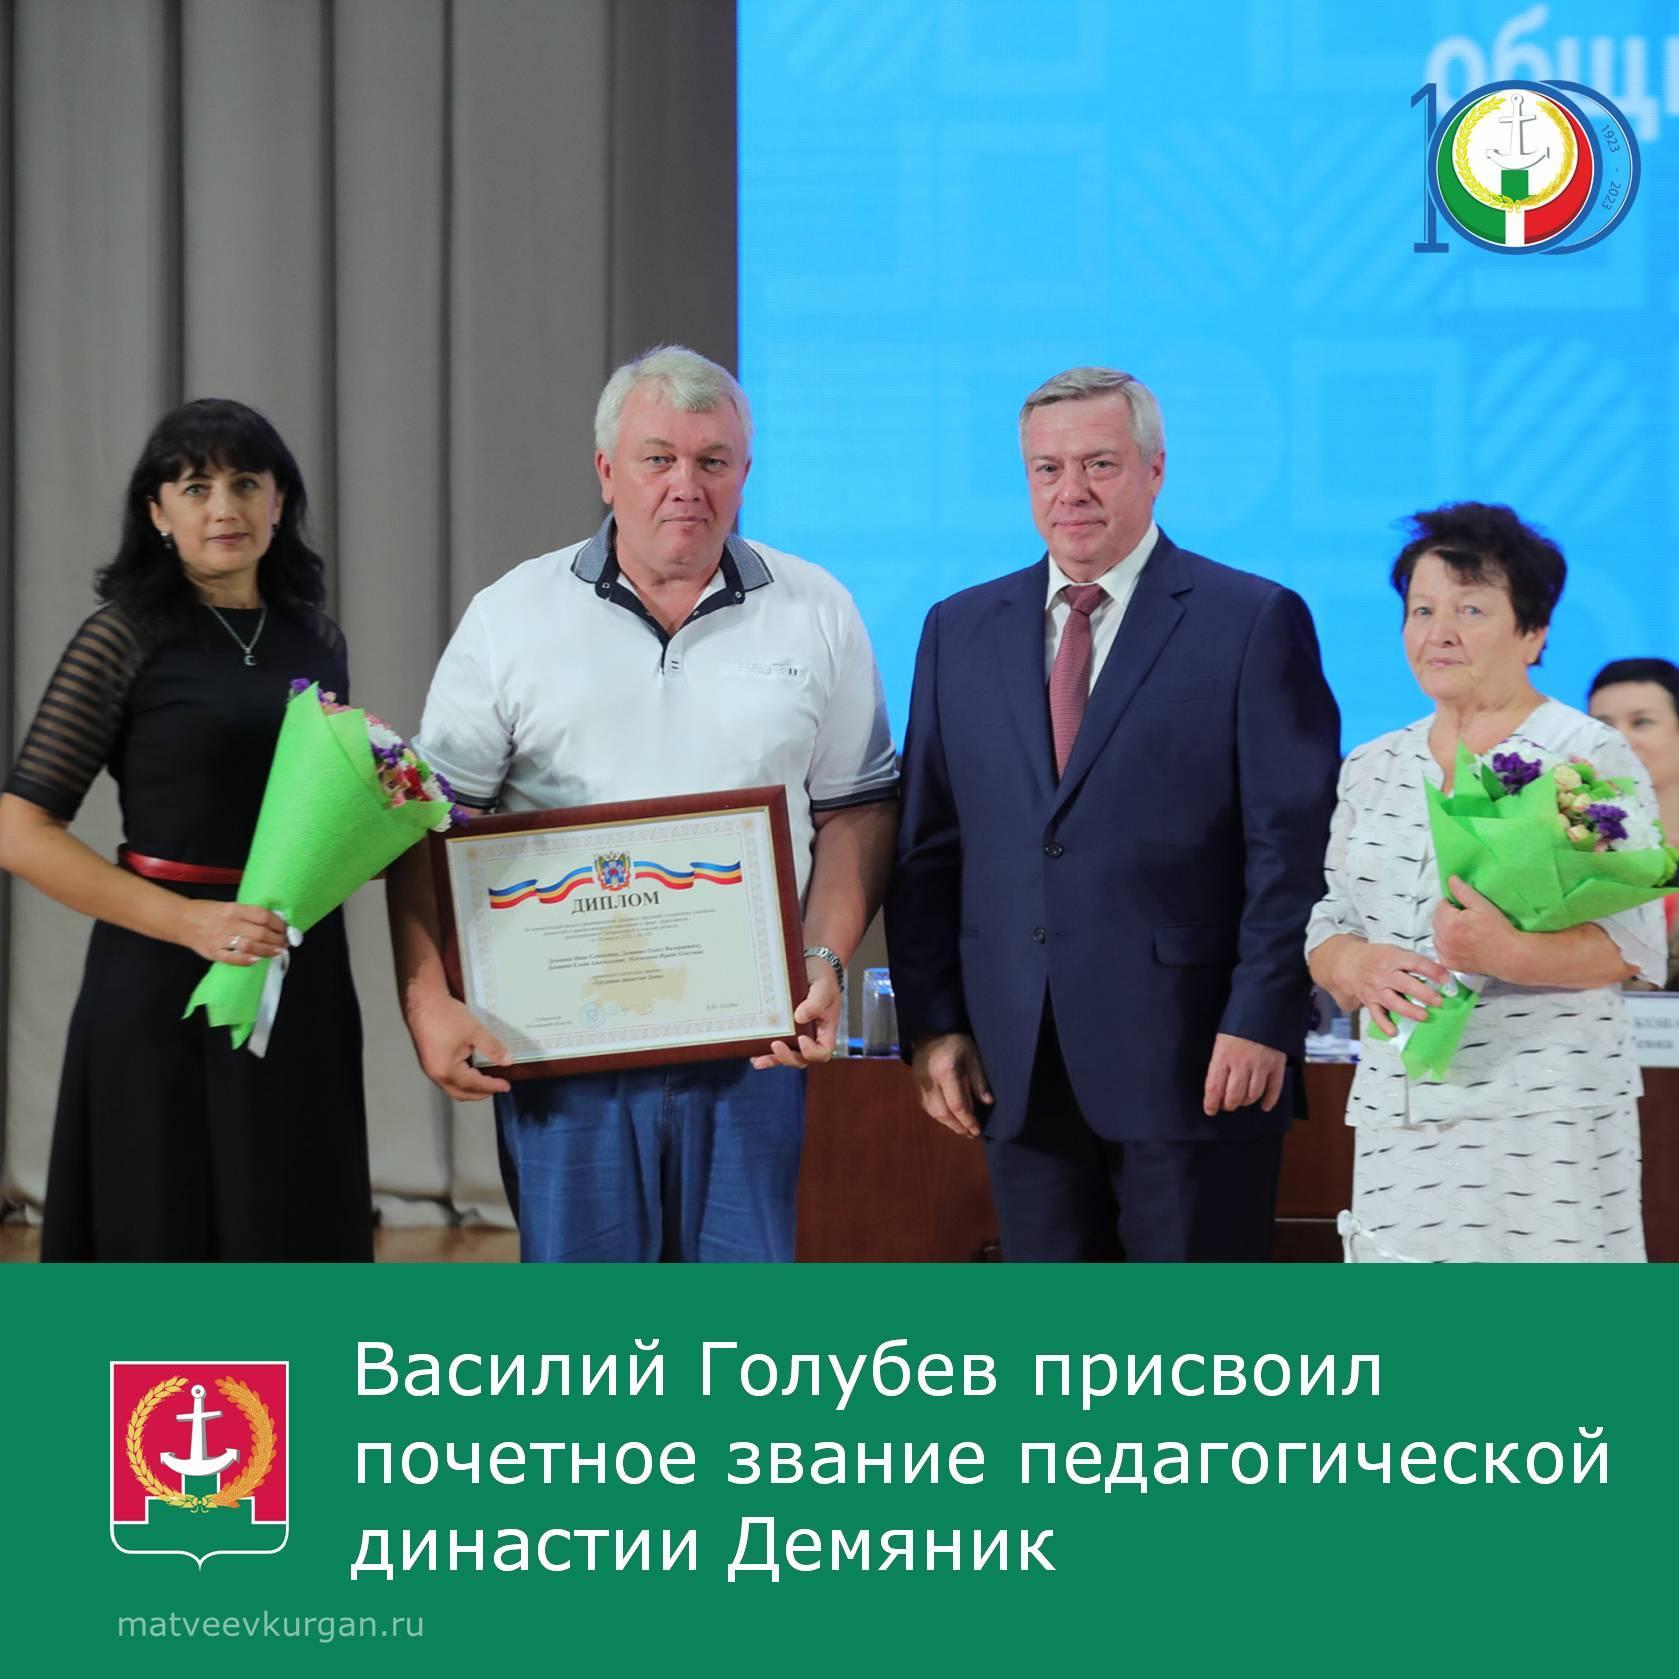 Губернатор Василий Голубев присвоил почетное звание педагогической династии Демяник